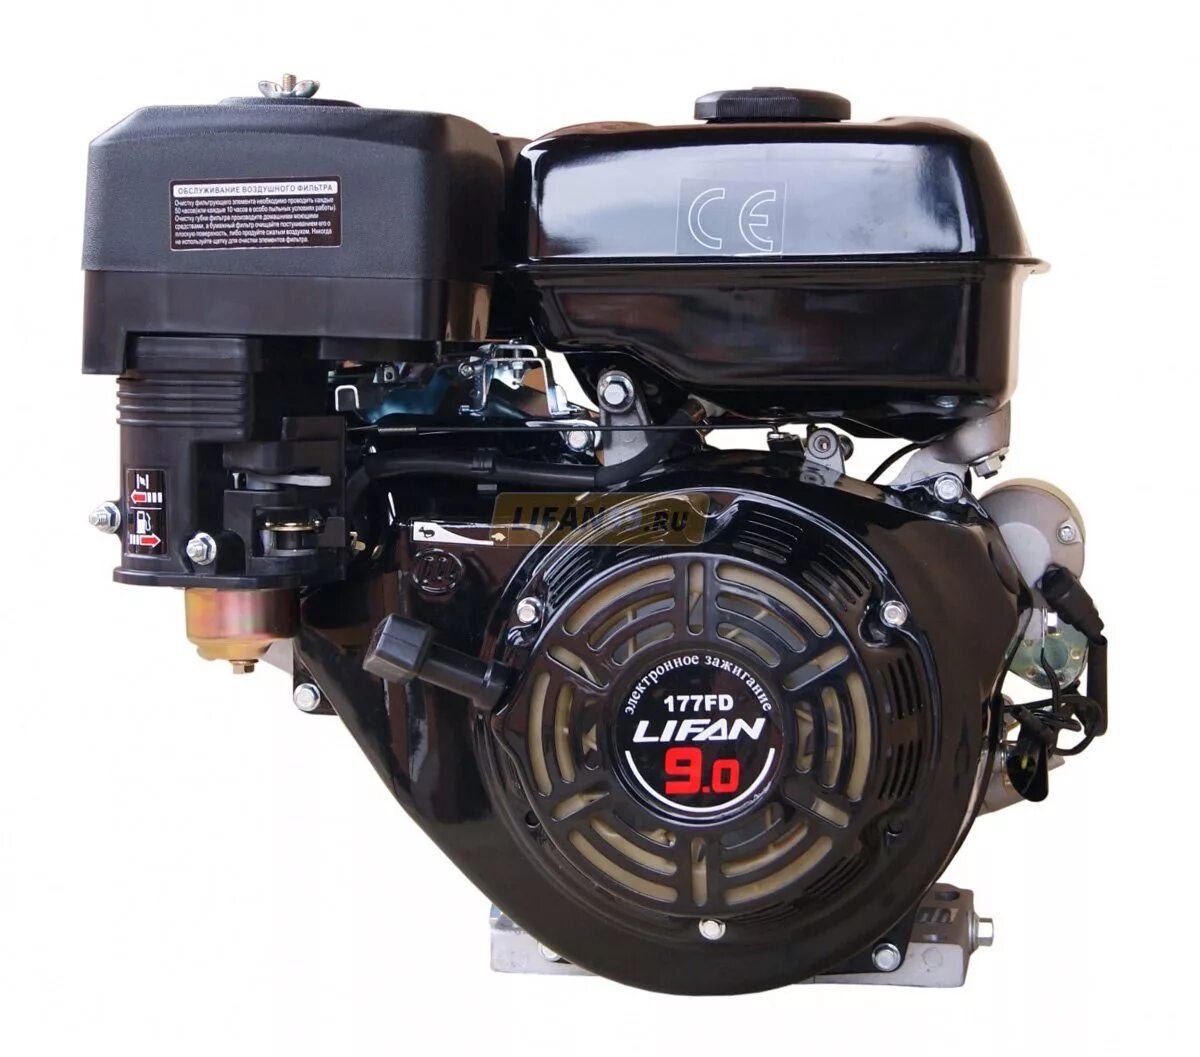 Двигатель 15 л с с электростартером. Двигатель Lifan 177fd. Двигатель бензиновый Lifan 177f (9 л.с.). Лифан 177fd. Двигатель Лифан 177fd 9 л.с с электростартером.